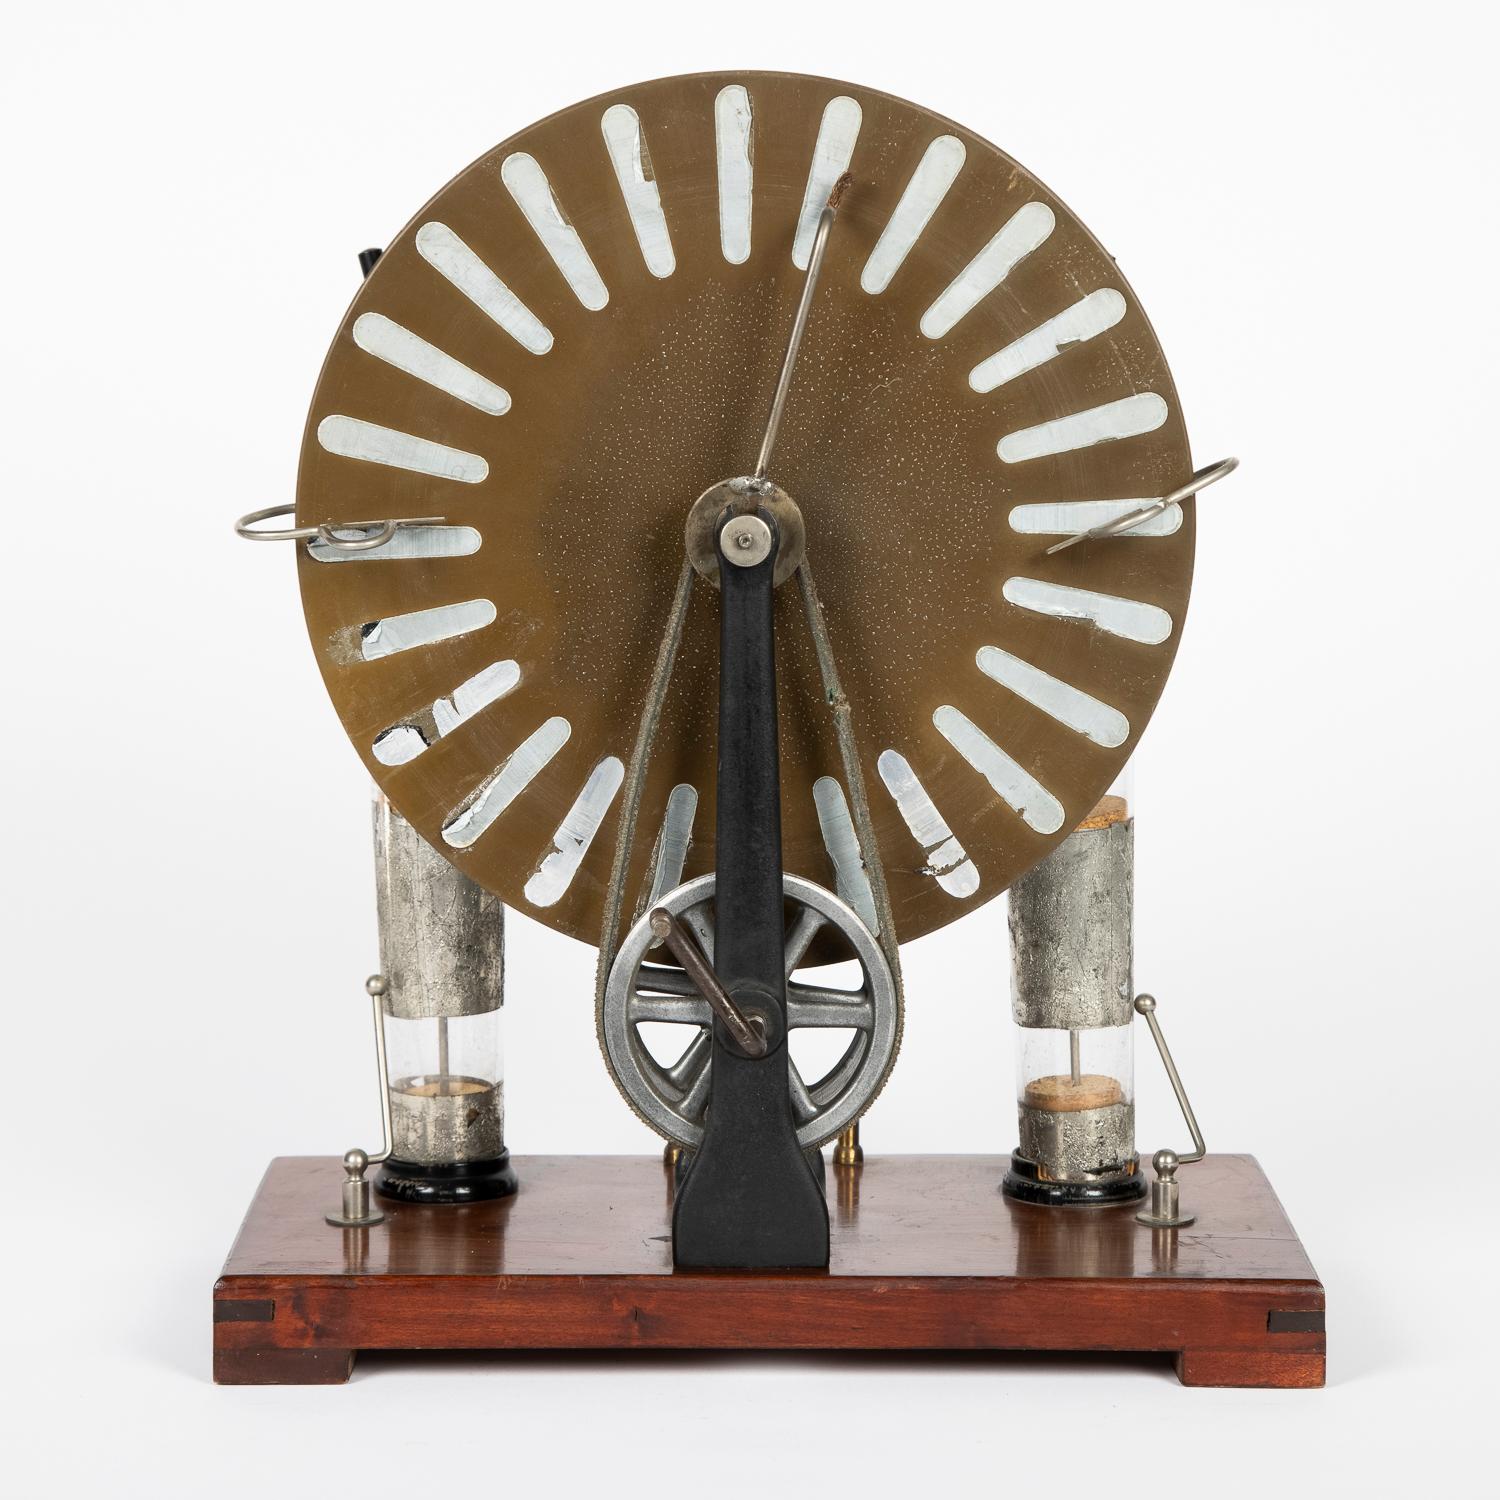 Whimshurst-Maschine von Voltana, Deutschland, um 1920.

Mit Label des Einzelhändlers: Gustave van Begin aus Brüssel - instruments scientifique Gustave van Begin Bruxelles.